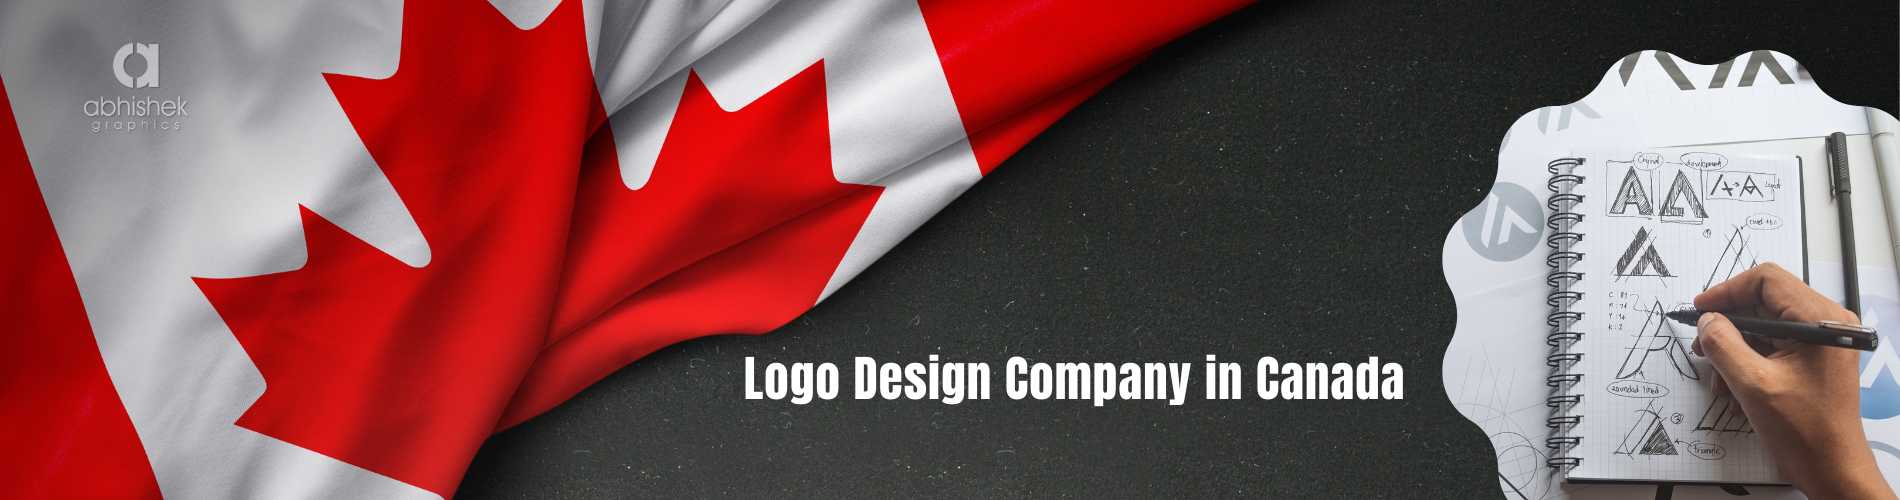 100,000 Canada logo Vector Images | Depositphotos-cheohanoi.vn